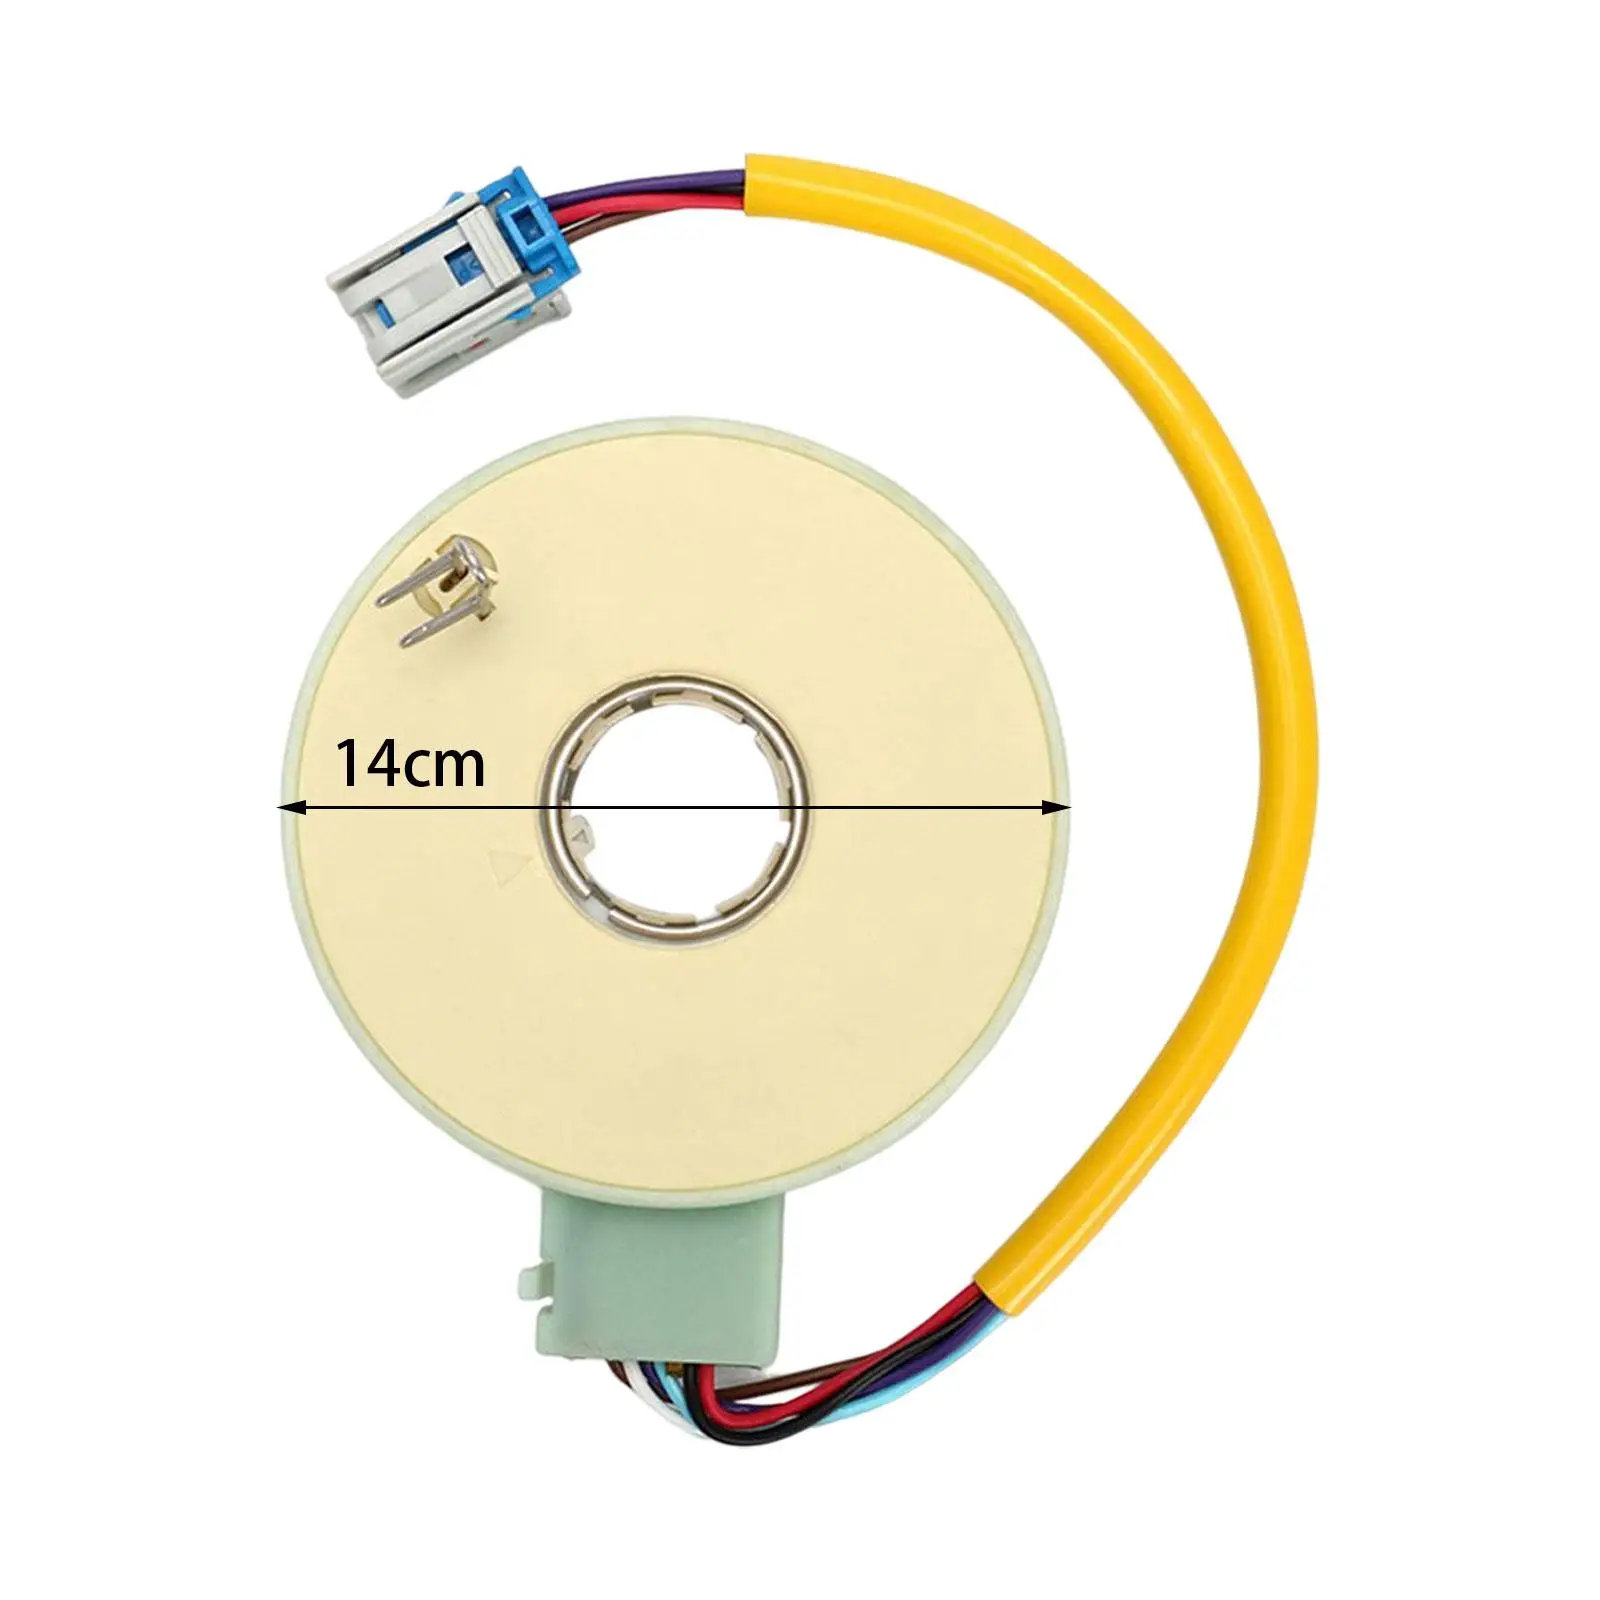 55701321 Steer Angle Sensor for Fiat PUNTO C1005 Zfa188 Drehmomentsensor C1005 C1006 Lenkwinkelsensor C5005 C5006 C1006